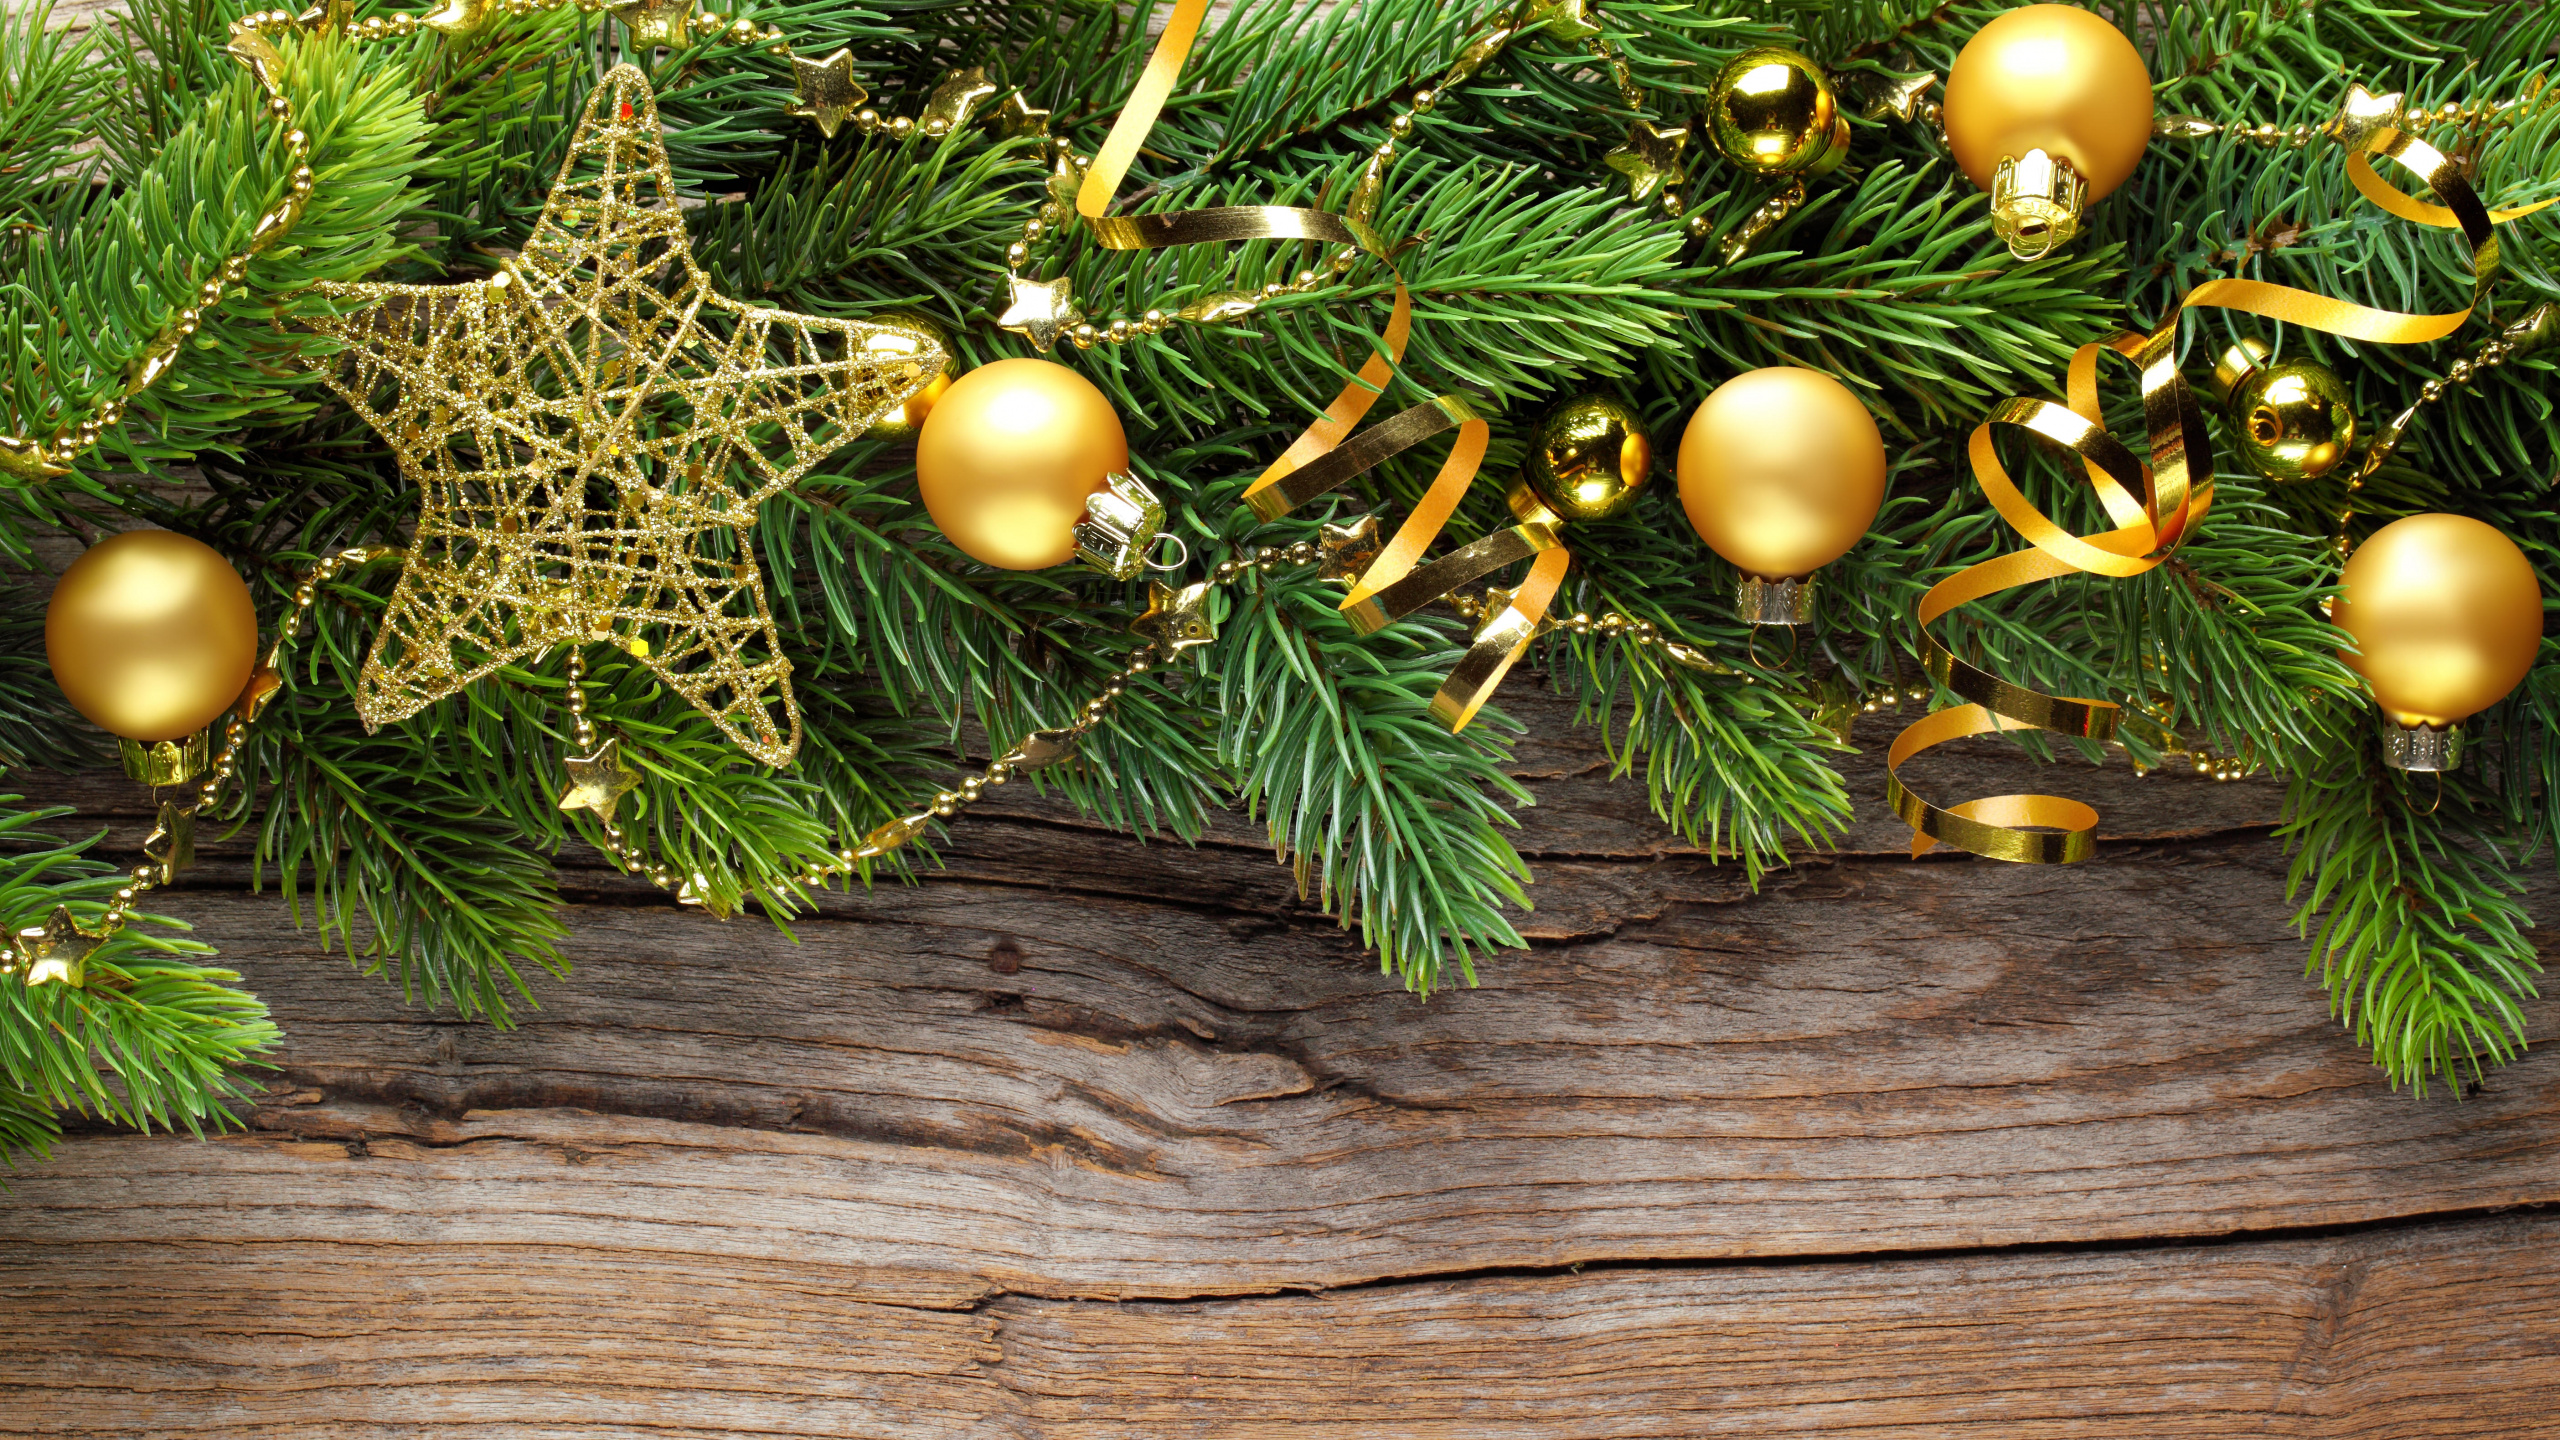 圣诞节那天, 圣诞树, 新的一年, 假日, 圣诞装饰 壁纸 2560x1440 允许